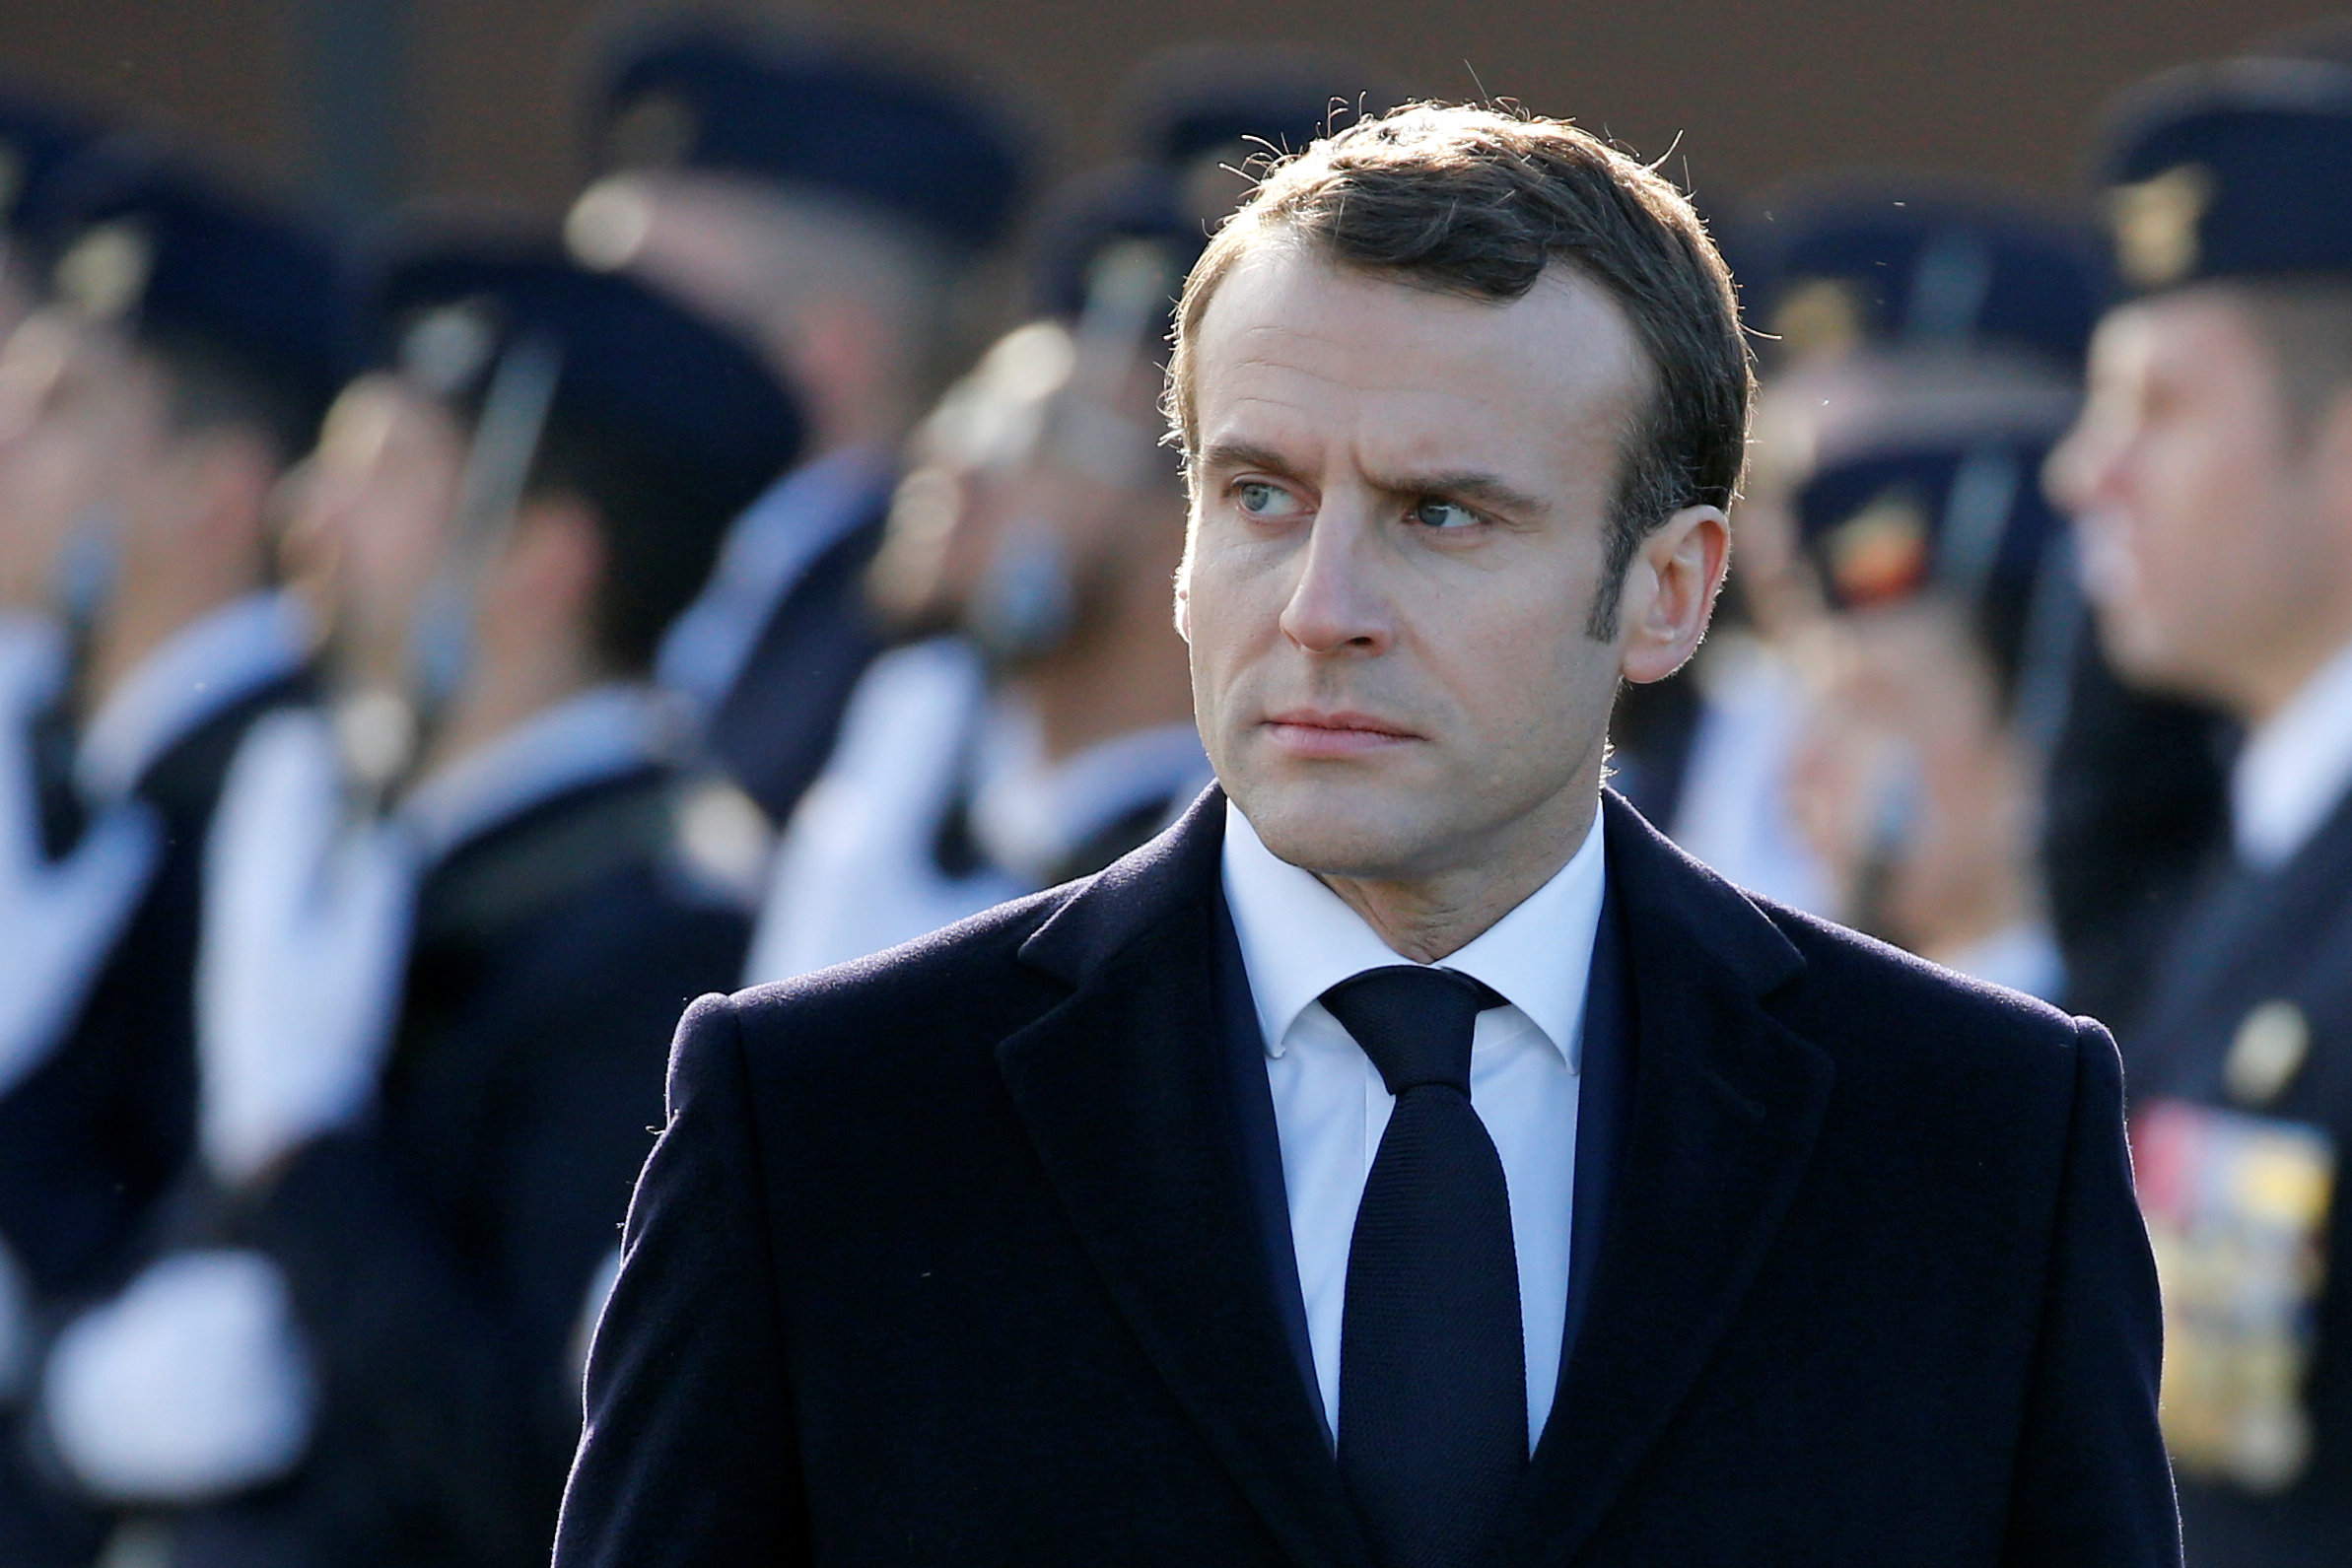 Macron quiere bajar los impuestos de las clases medias, según el texto de un discurso